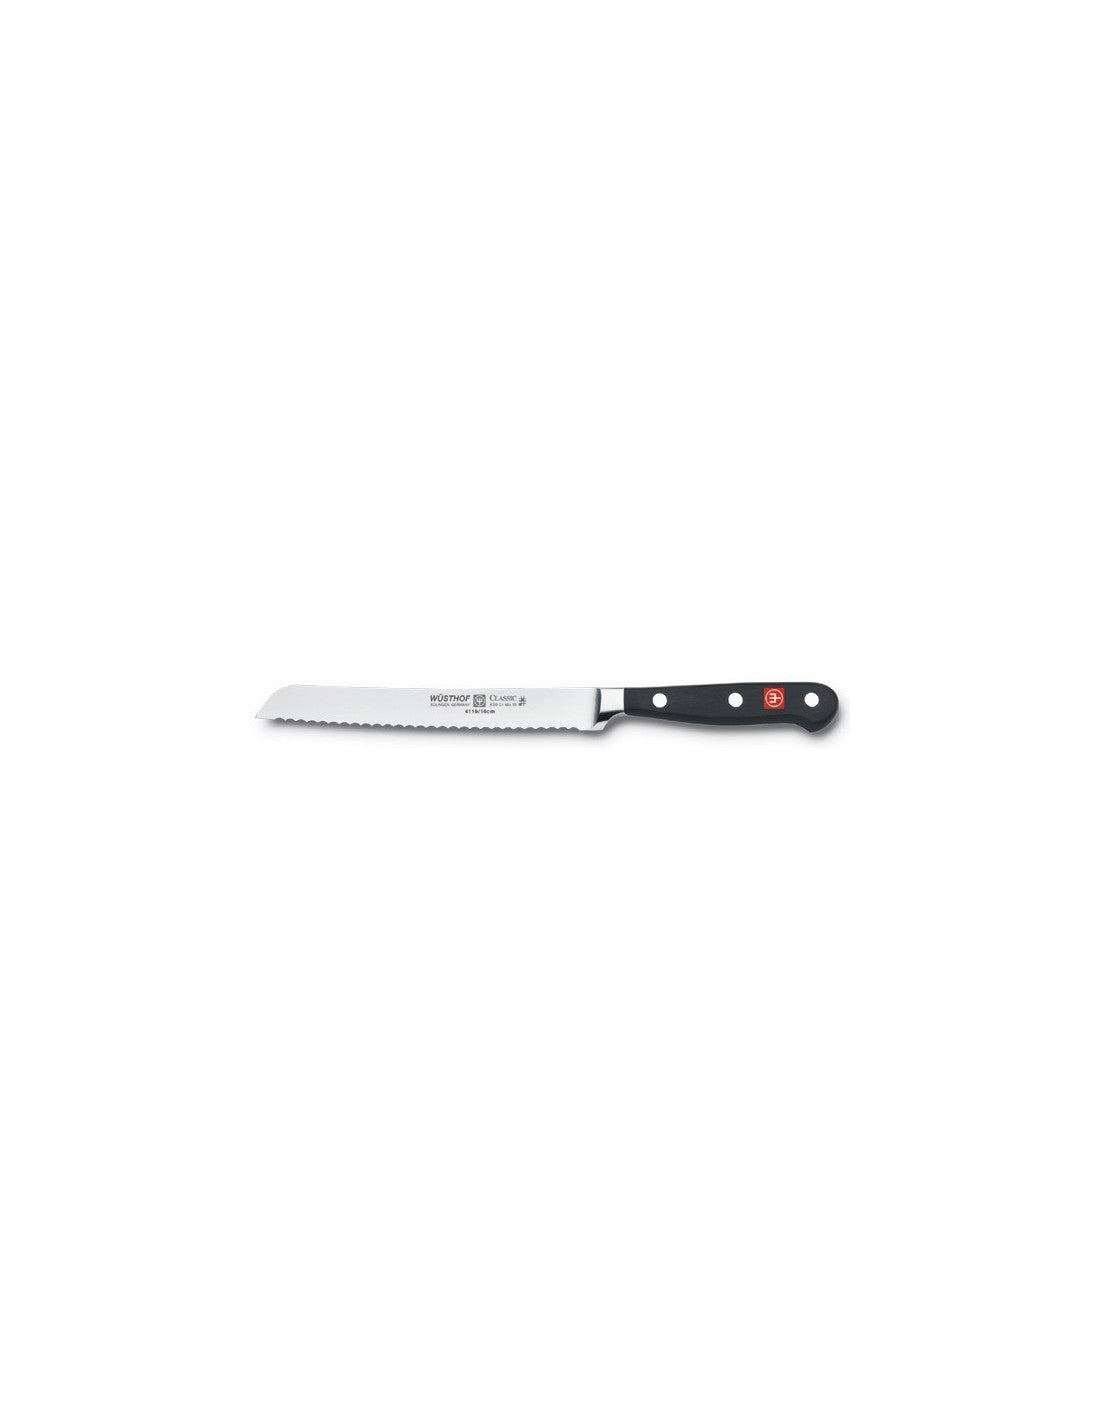 Wusthof Classic coltello per salame 16 cm.4119/14